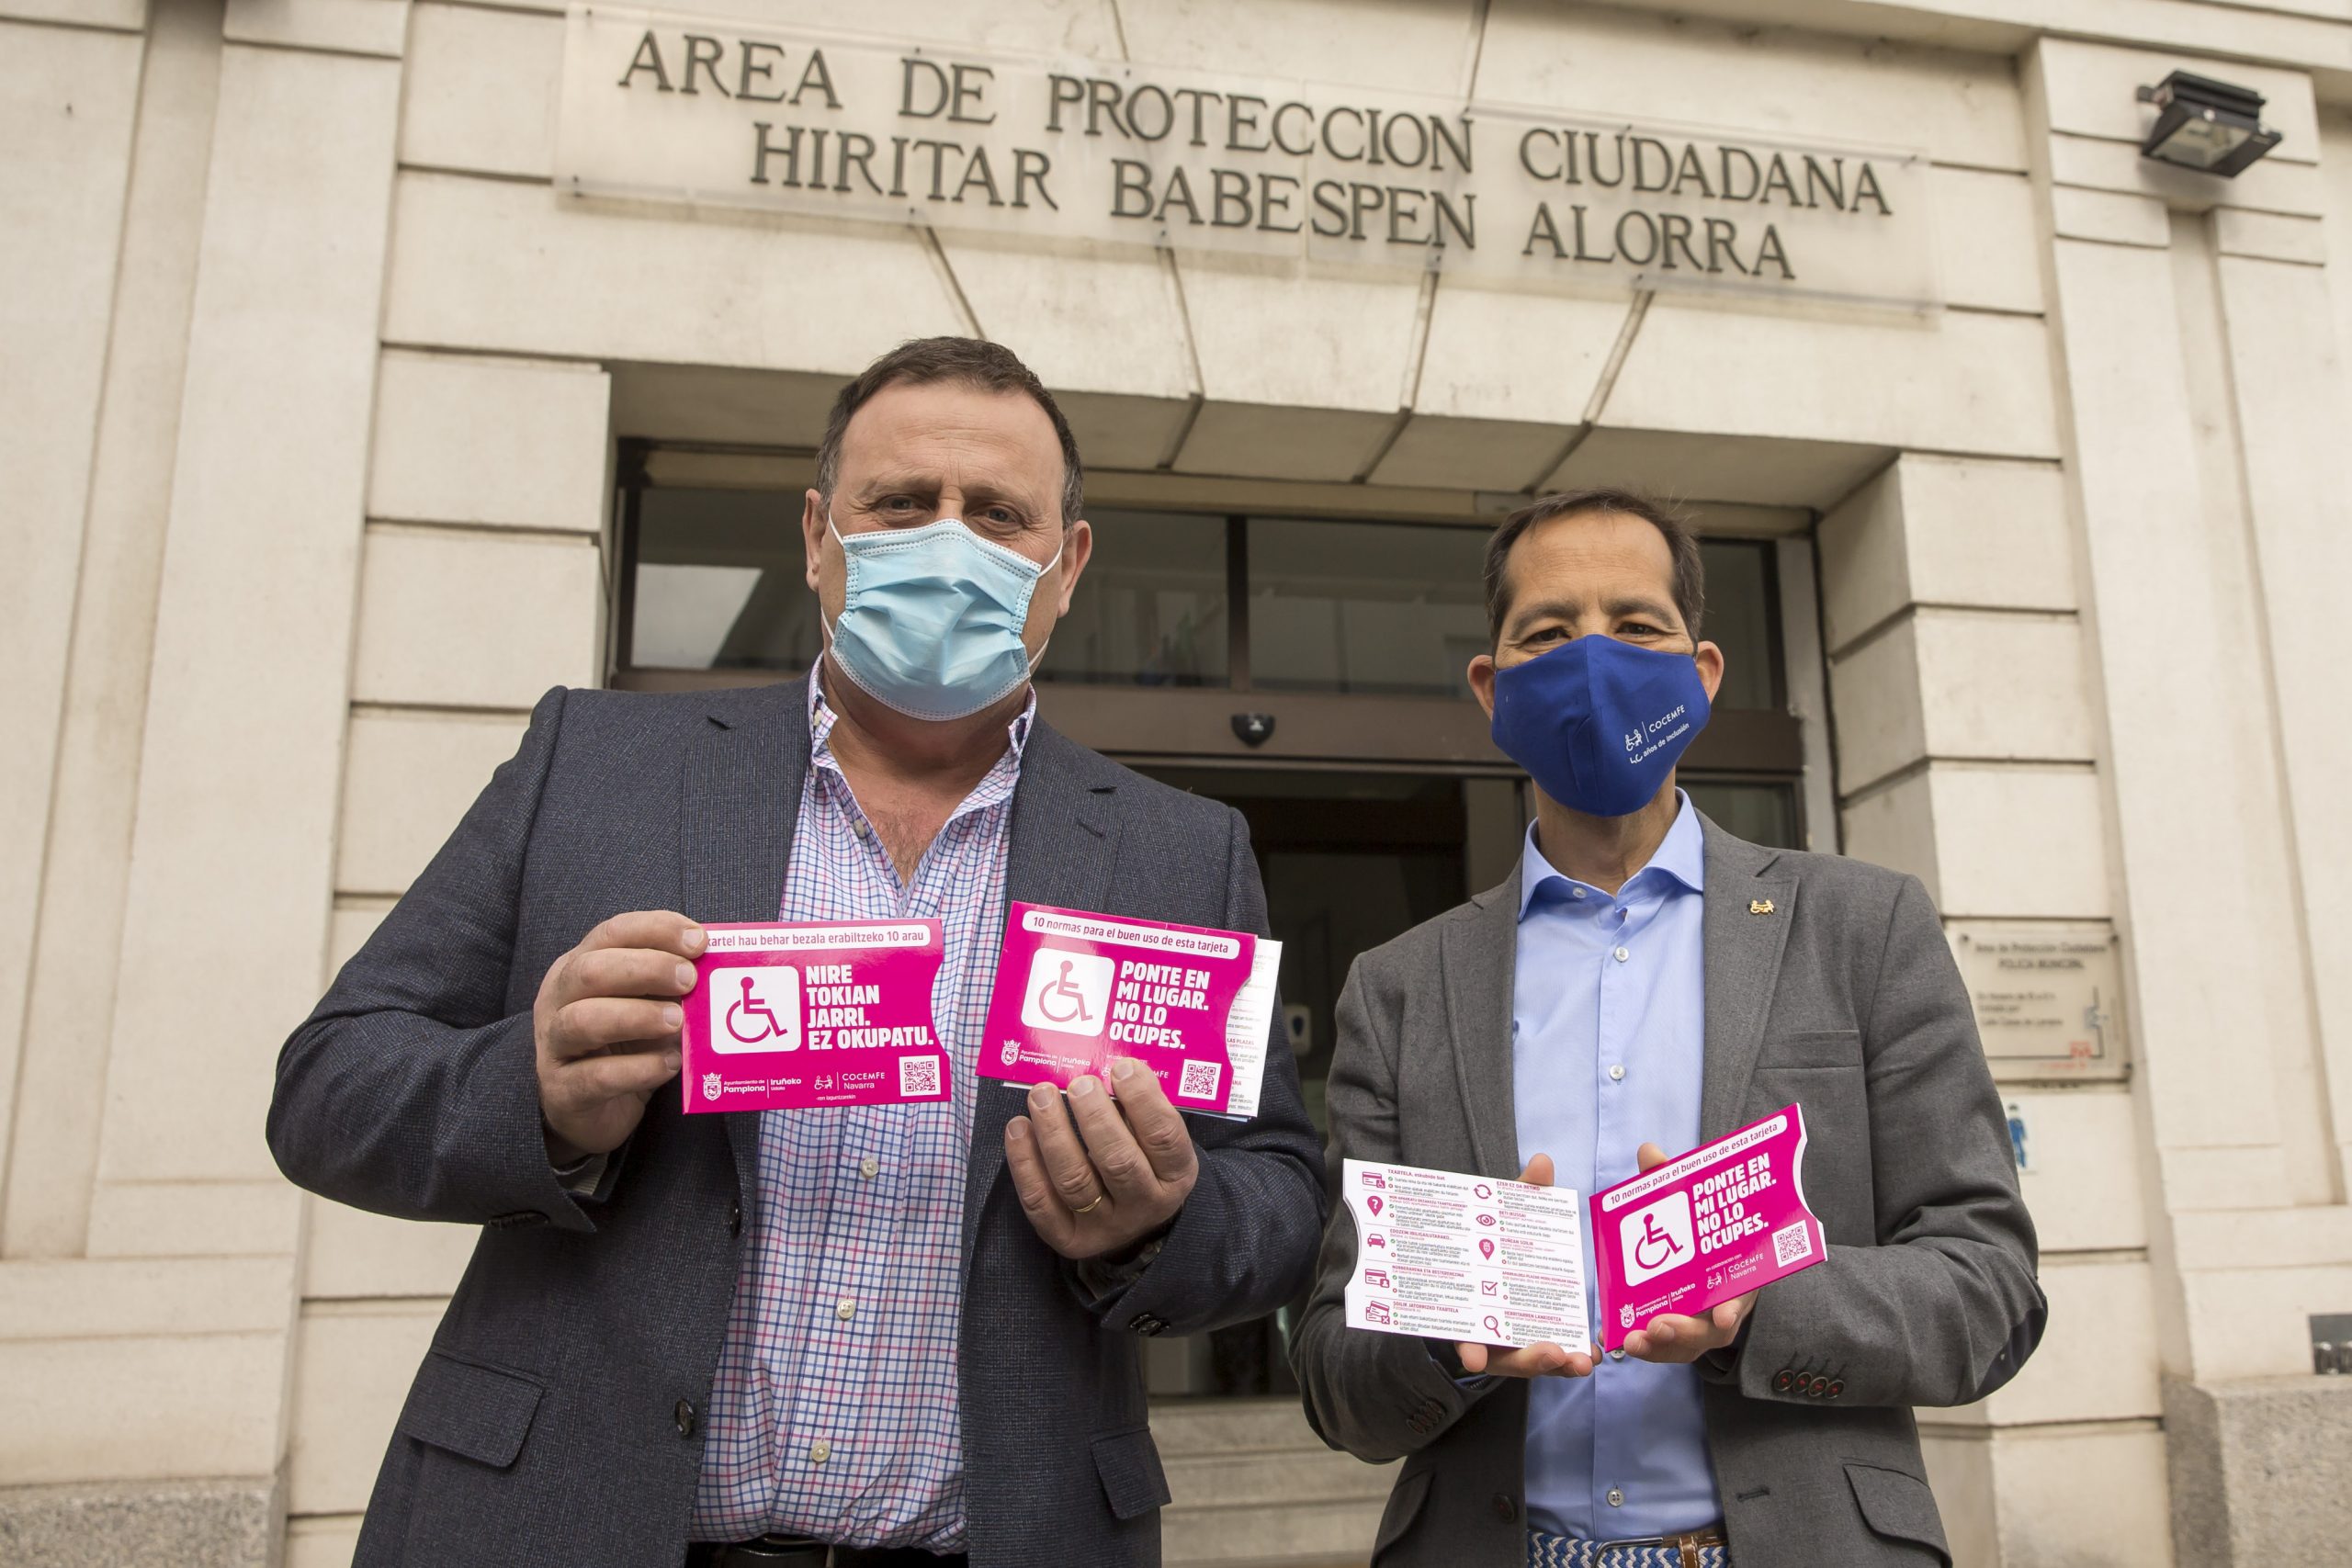 Javier Labairu y Manuel Arellano posan mostrando las fundas de las tarjetas de aparcamiento